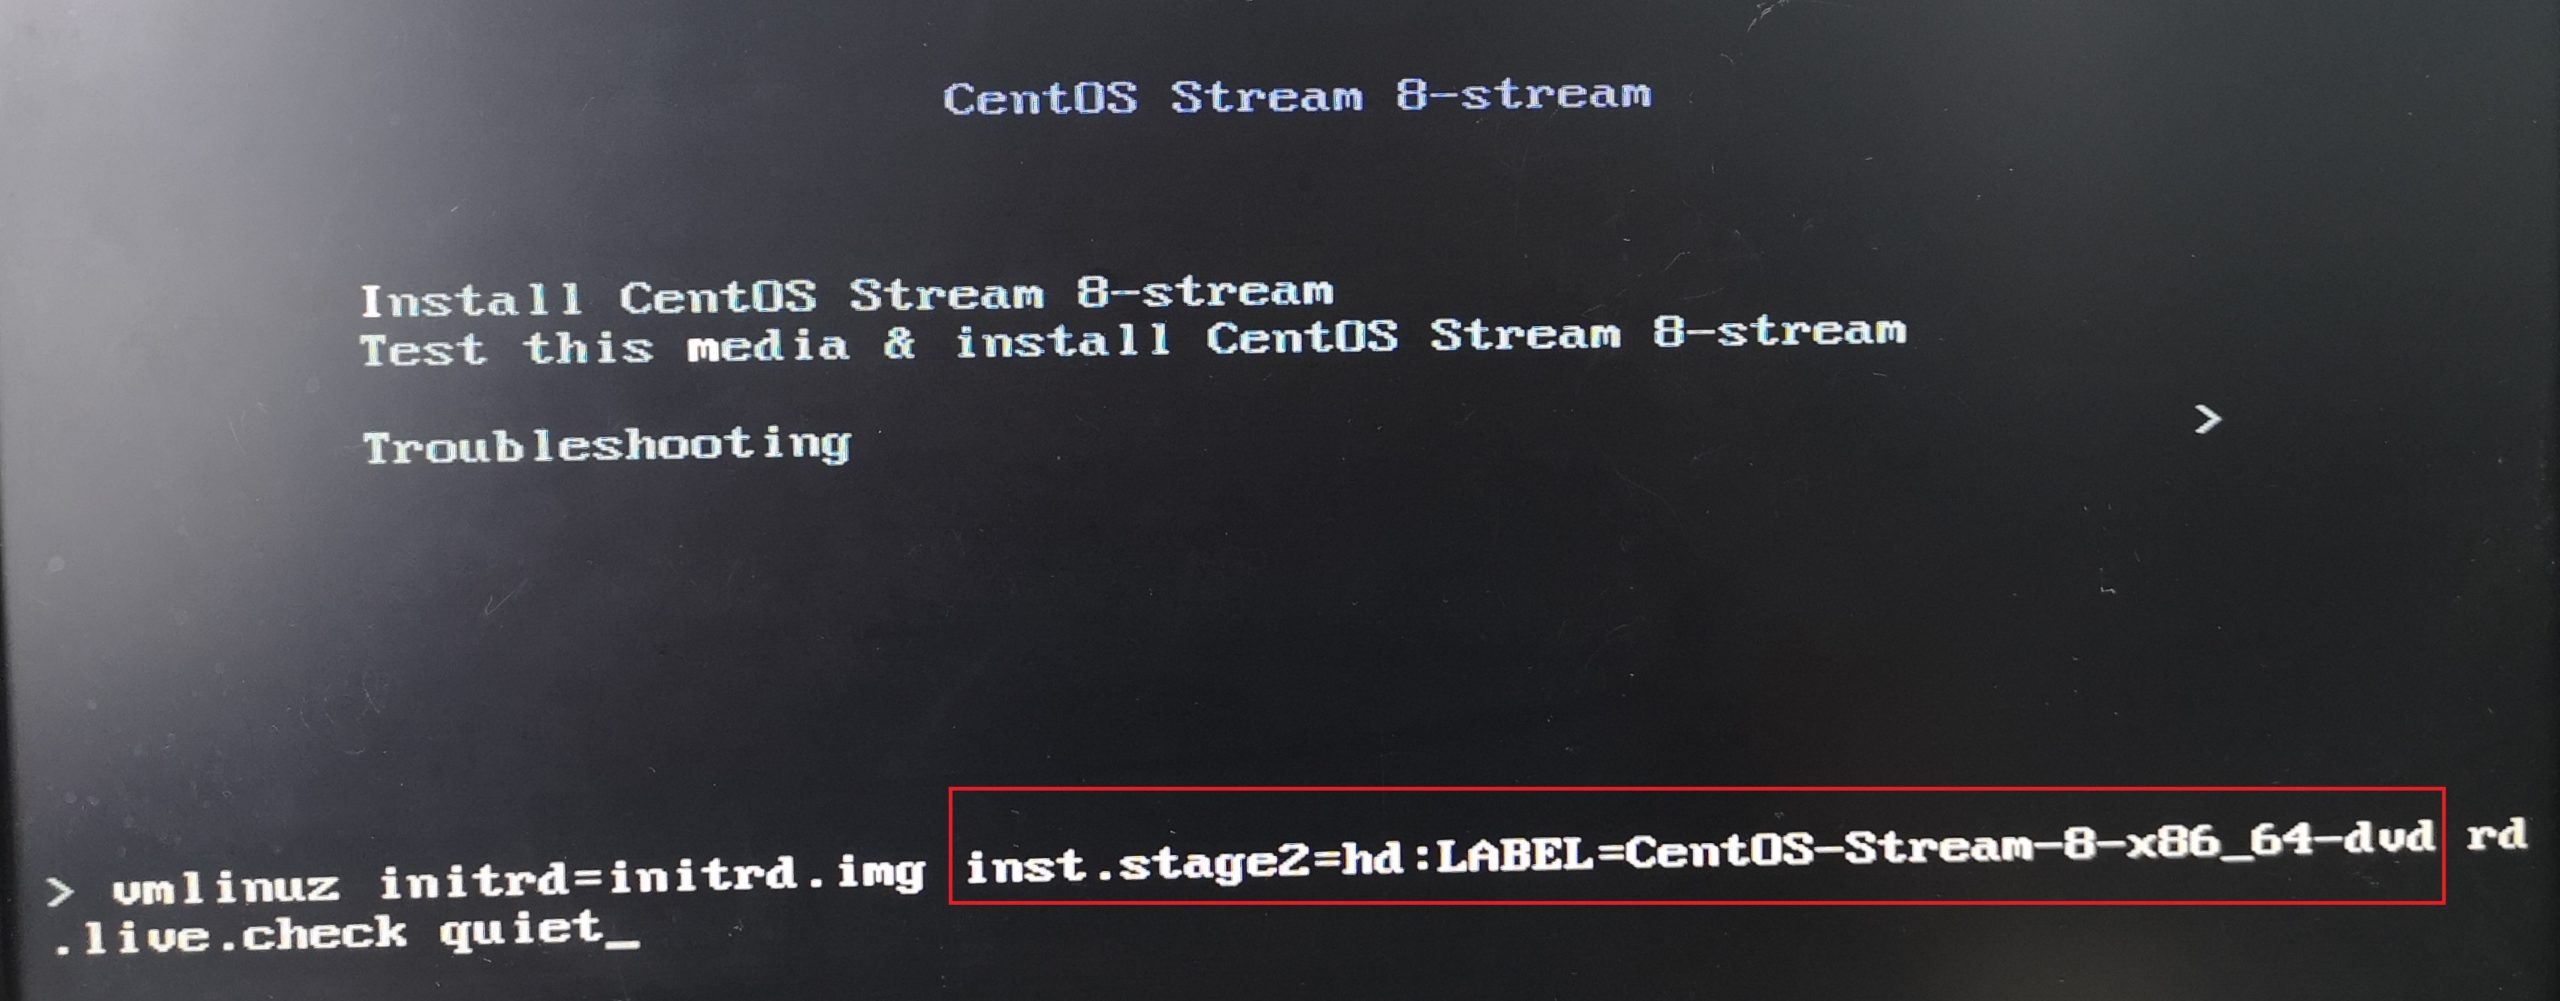 Install CentOS Stream 8-stream的启动参数